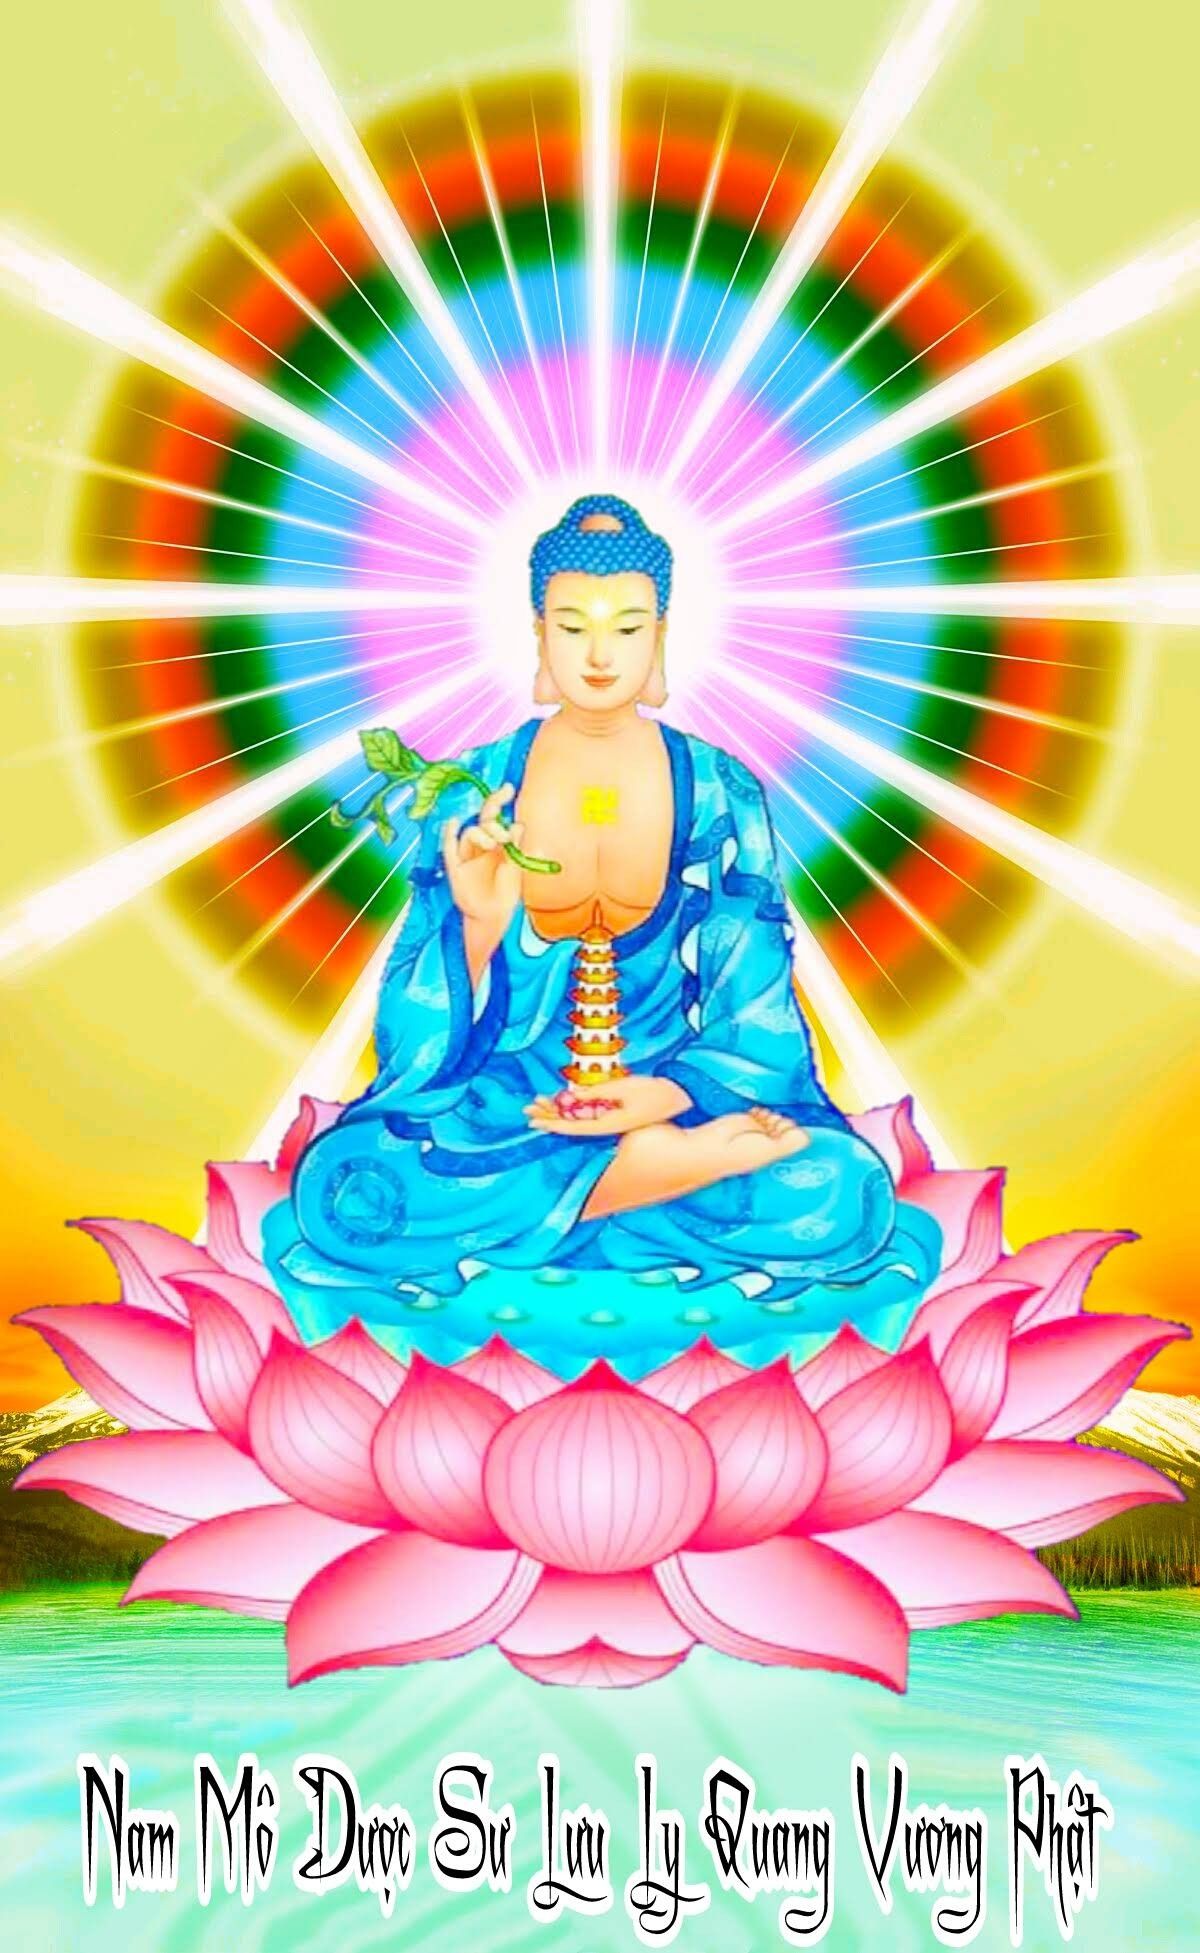 Tranh Phật Giáo Dược Sư Lưu Ly Quang Vương Phật 2106 Các loại tranh khác